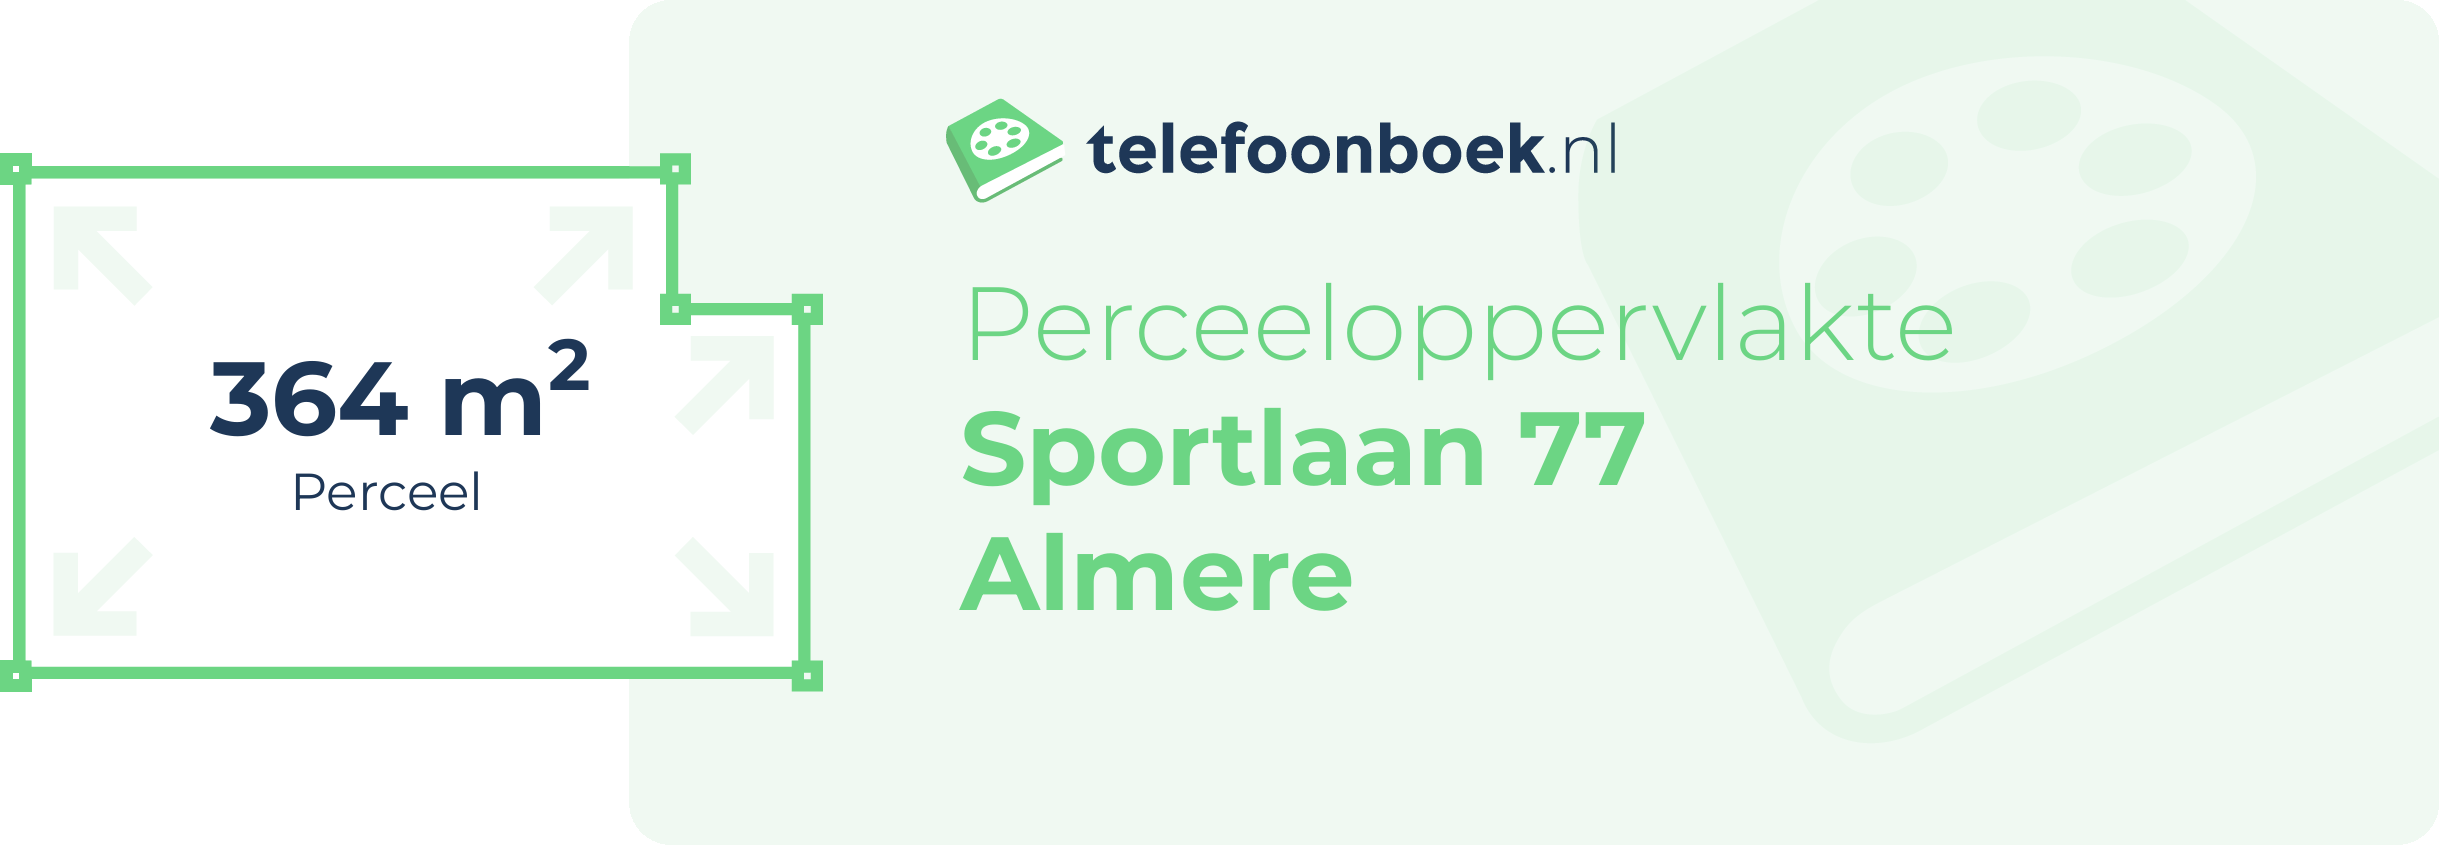 Perceeloppervlakte Sportlaan 77 Almere